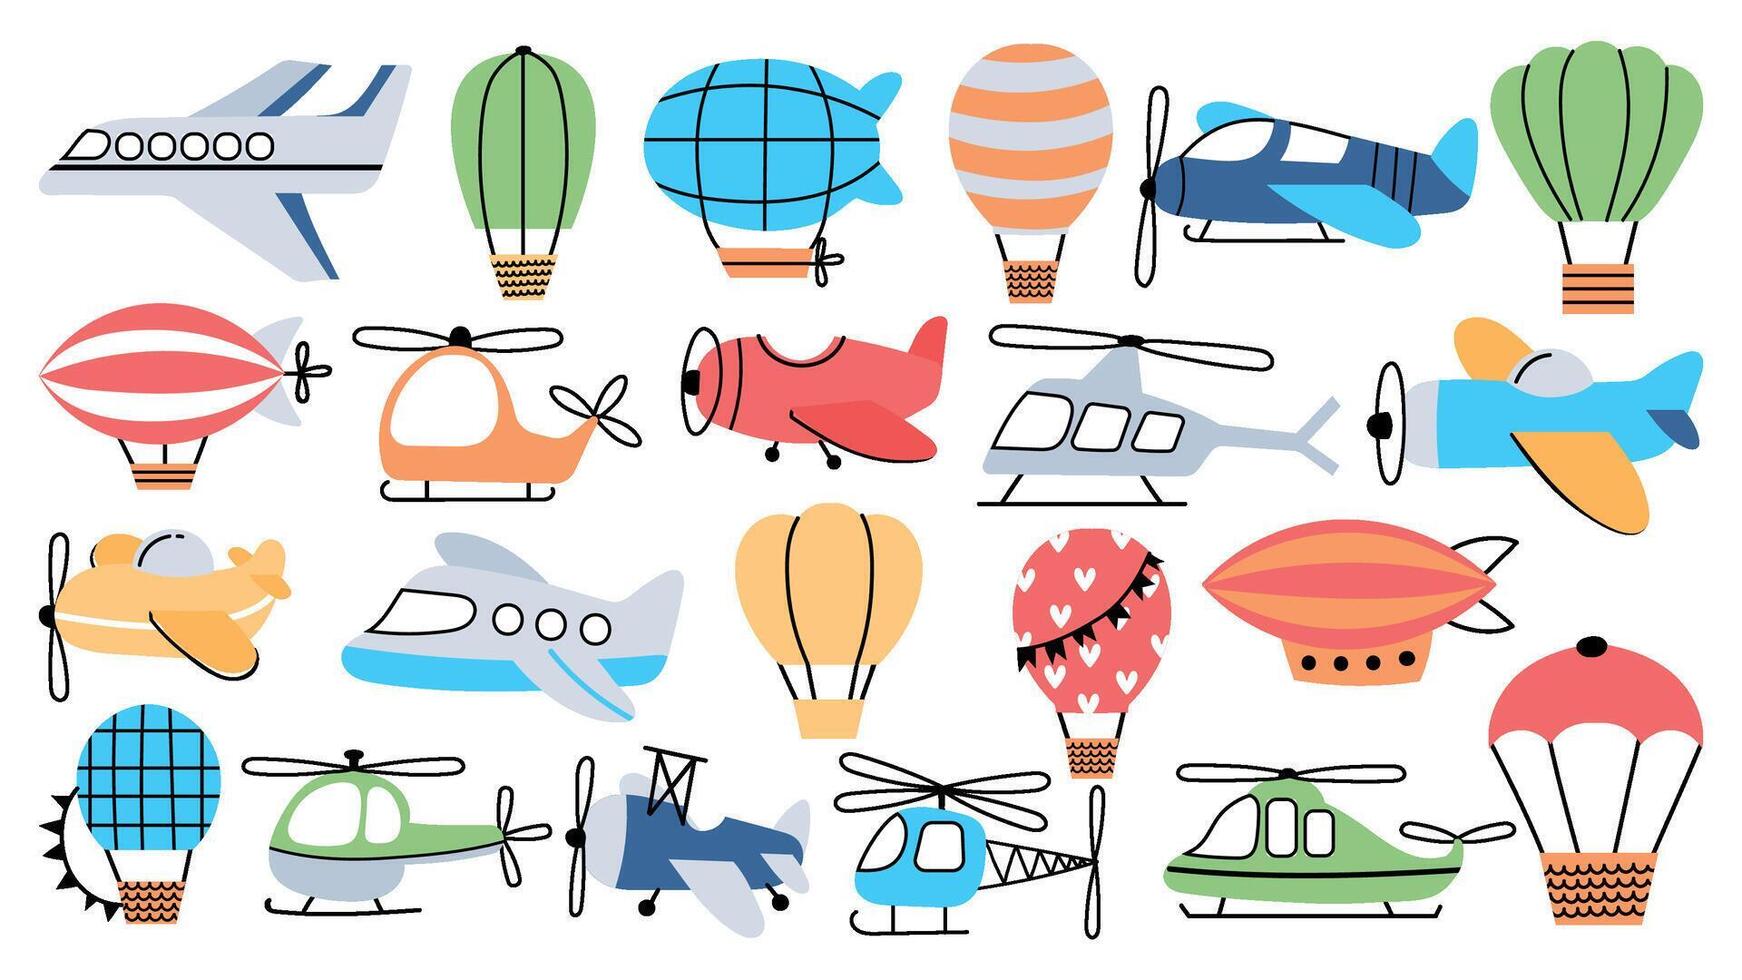 luft transport i barnslig stil, plan, helikopter, luftskepp och ballong. flygande flygplan för barn barnkammare dekoration, reser vektor uppsättning